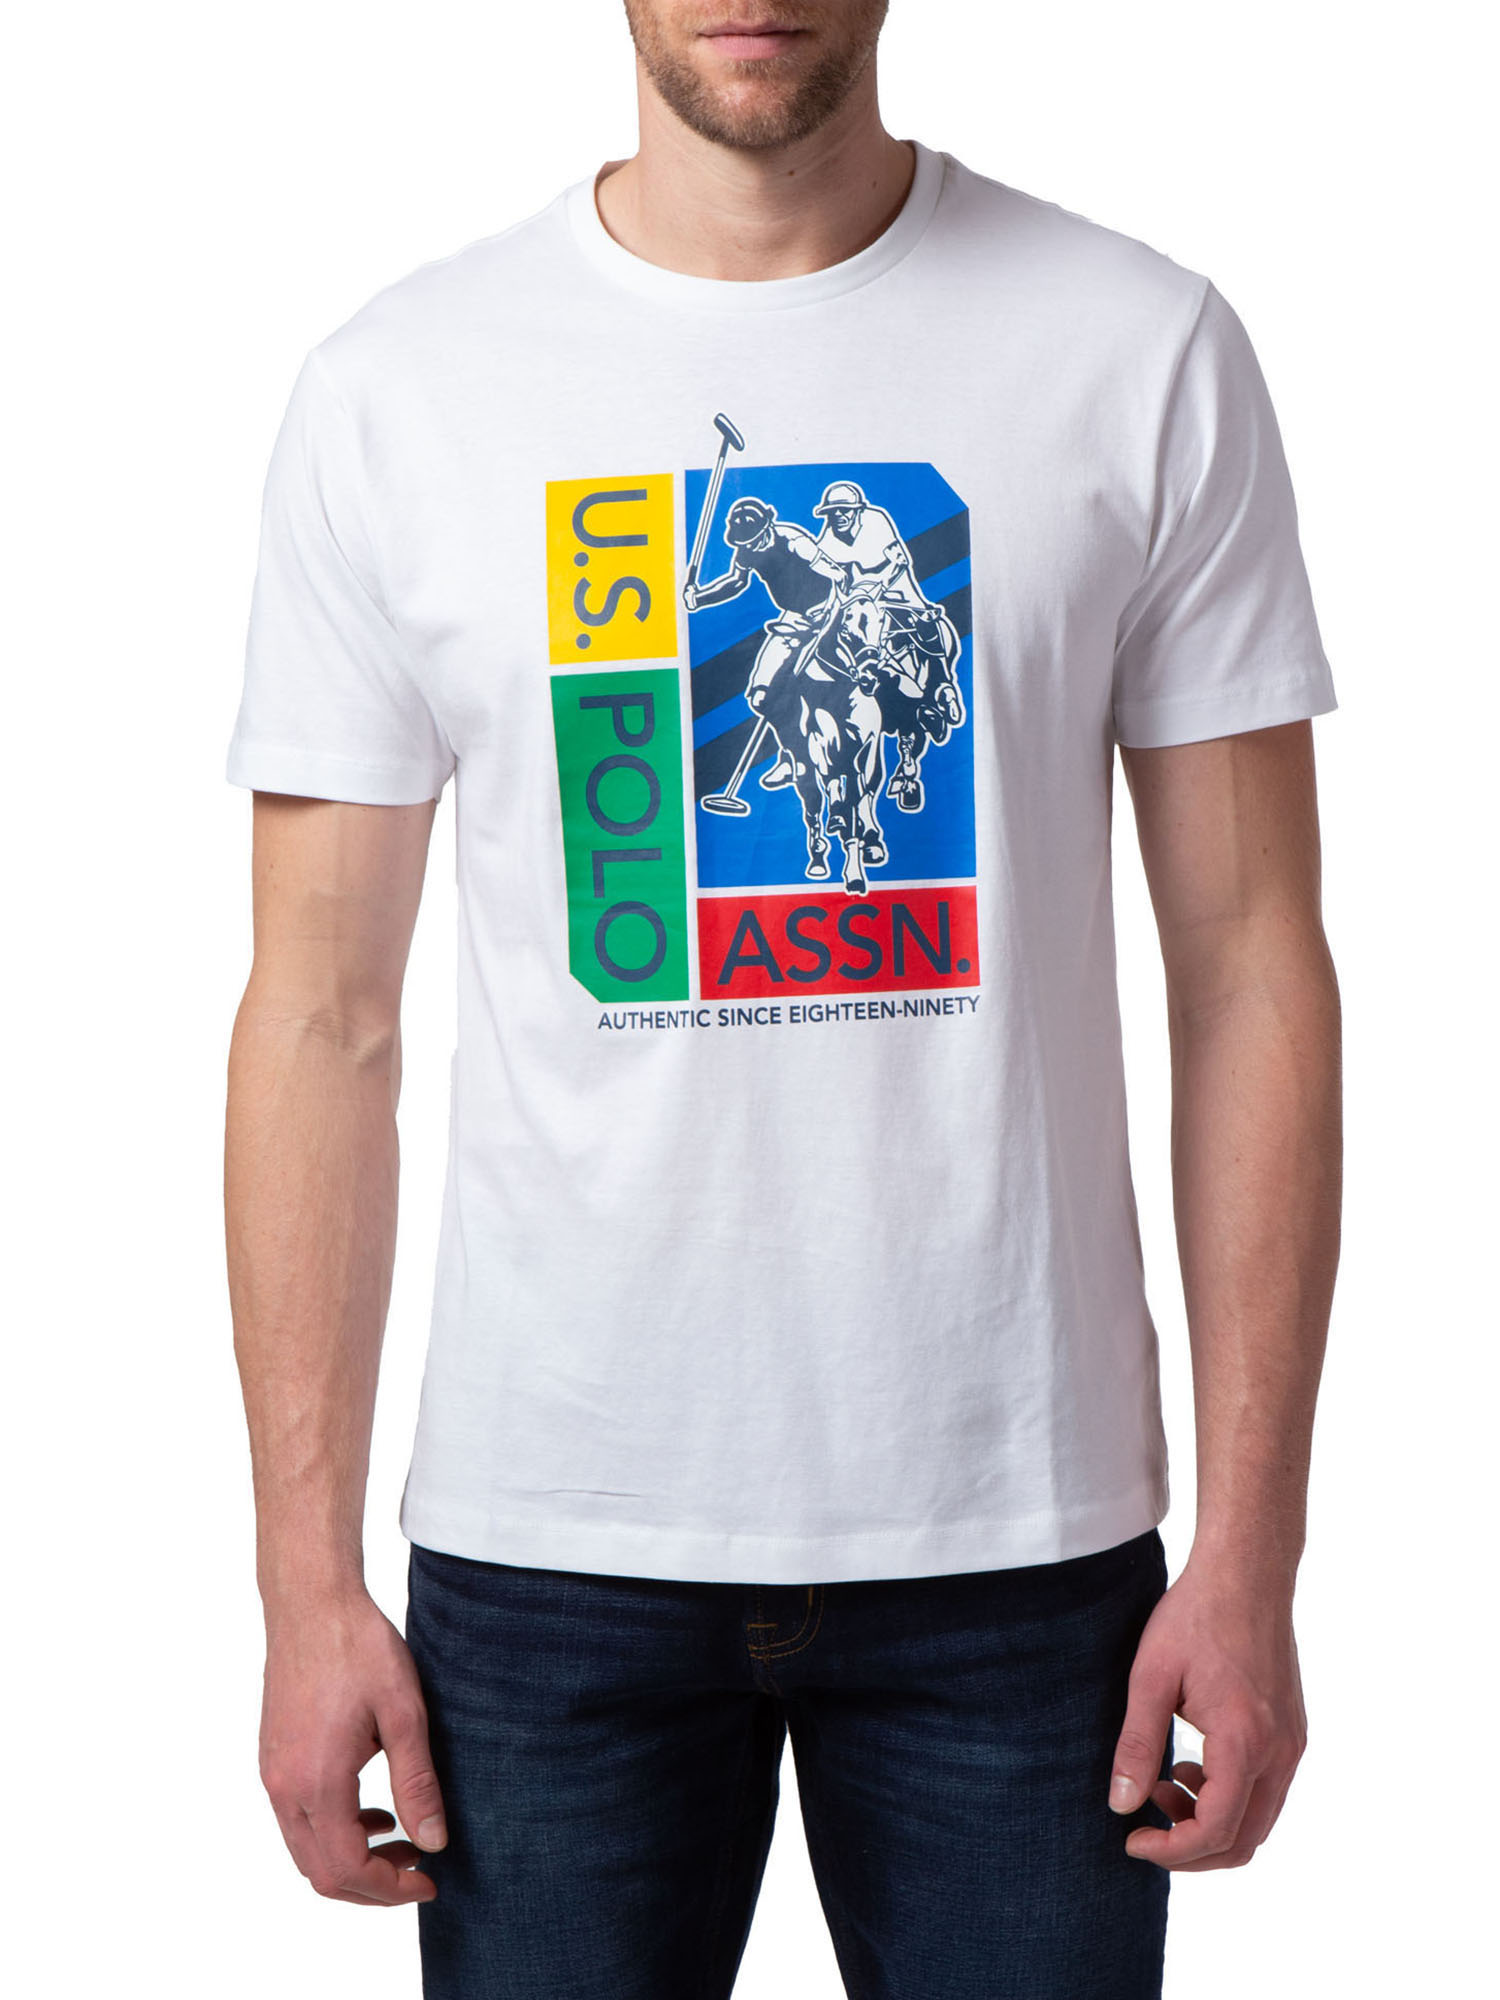 U.S. Polo Assn. Men's Short Sleeve T-Shirt - image 1 of 3